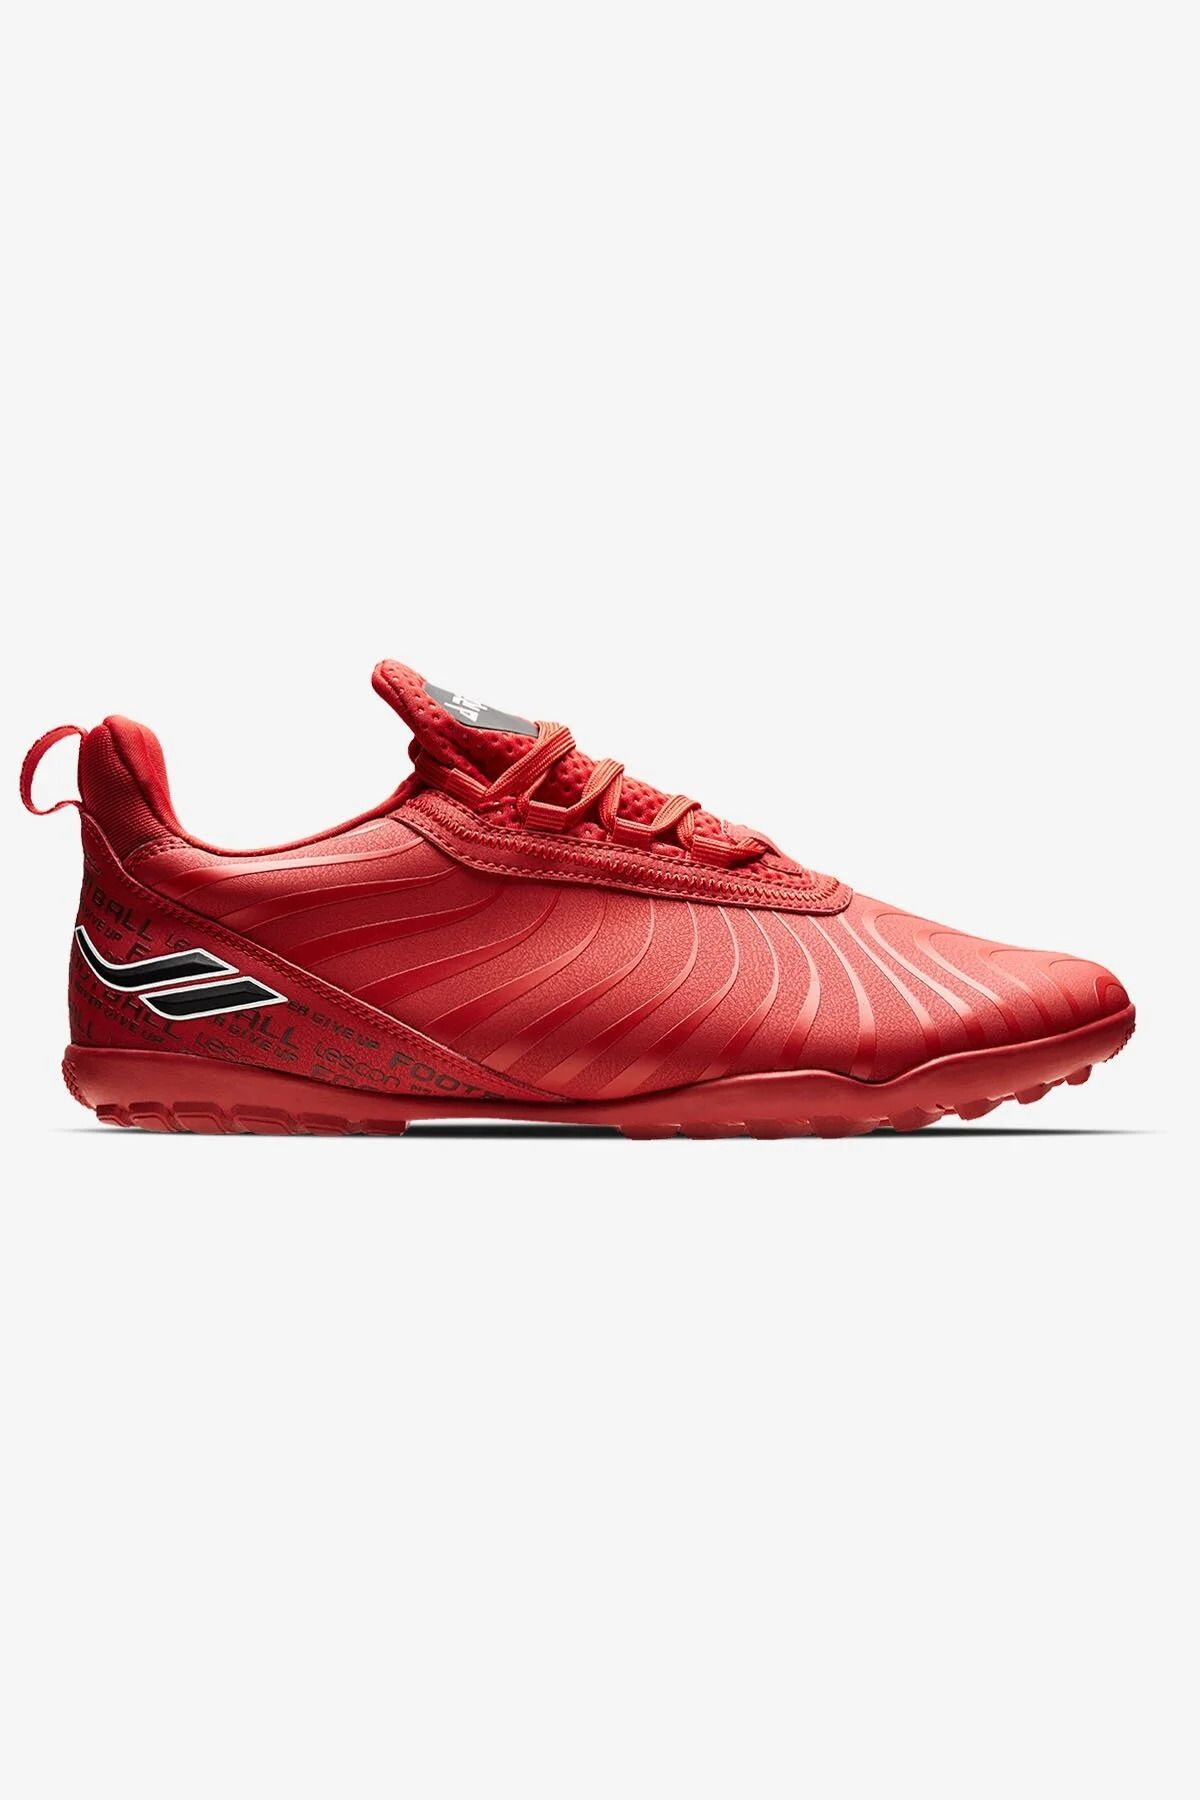 Lescon Ares 4 Kırmızı Halı Saha Futbol Ayakkabısı.